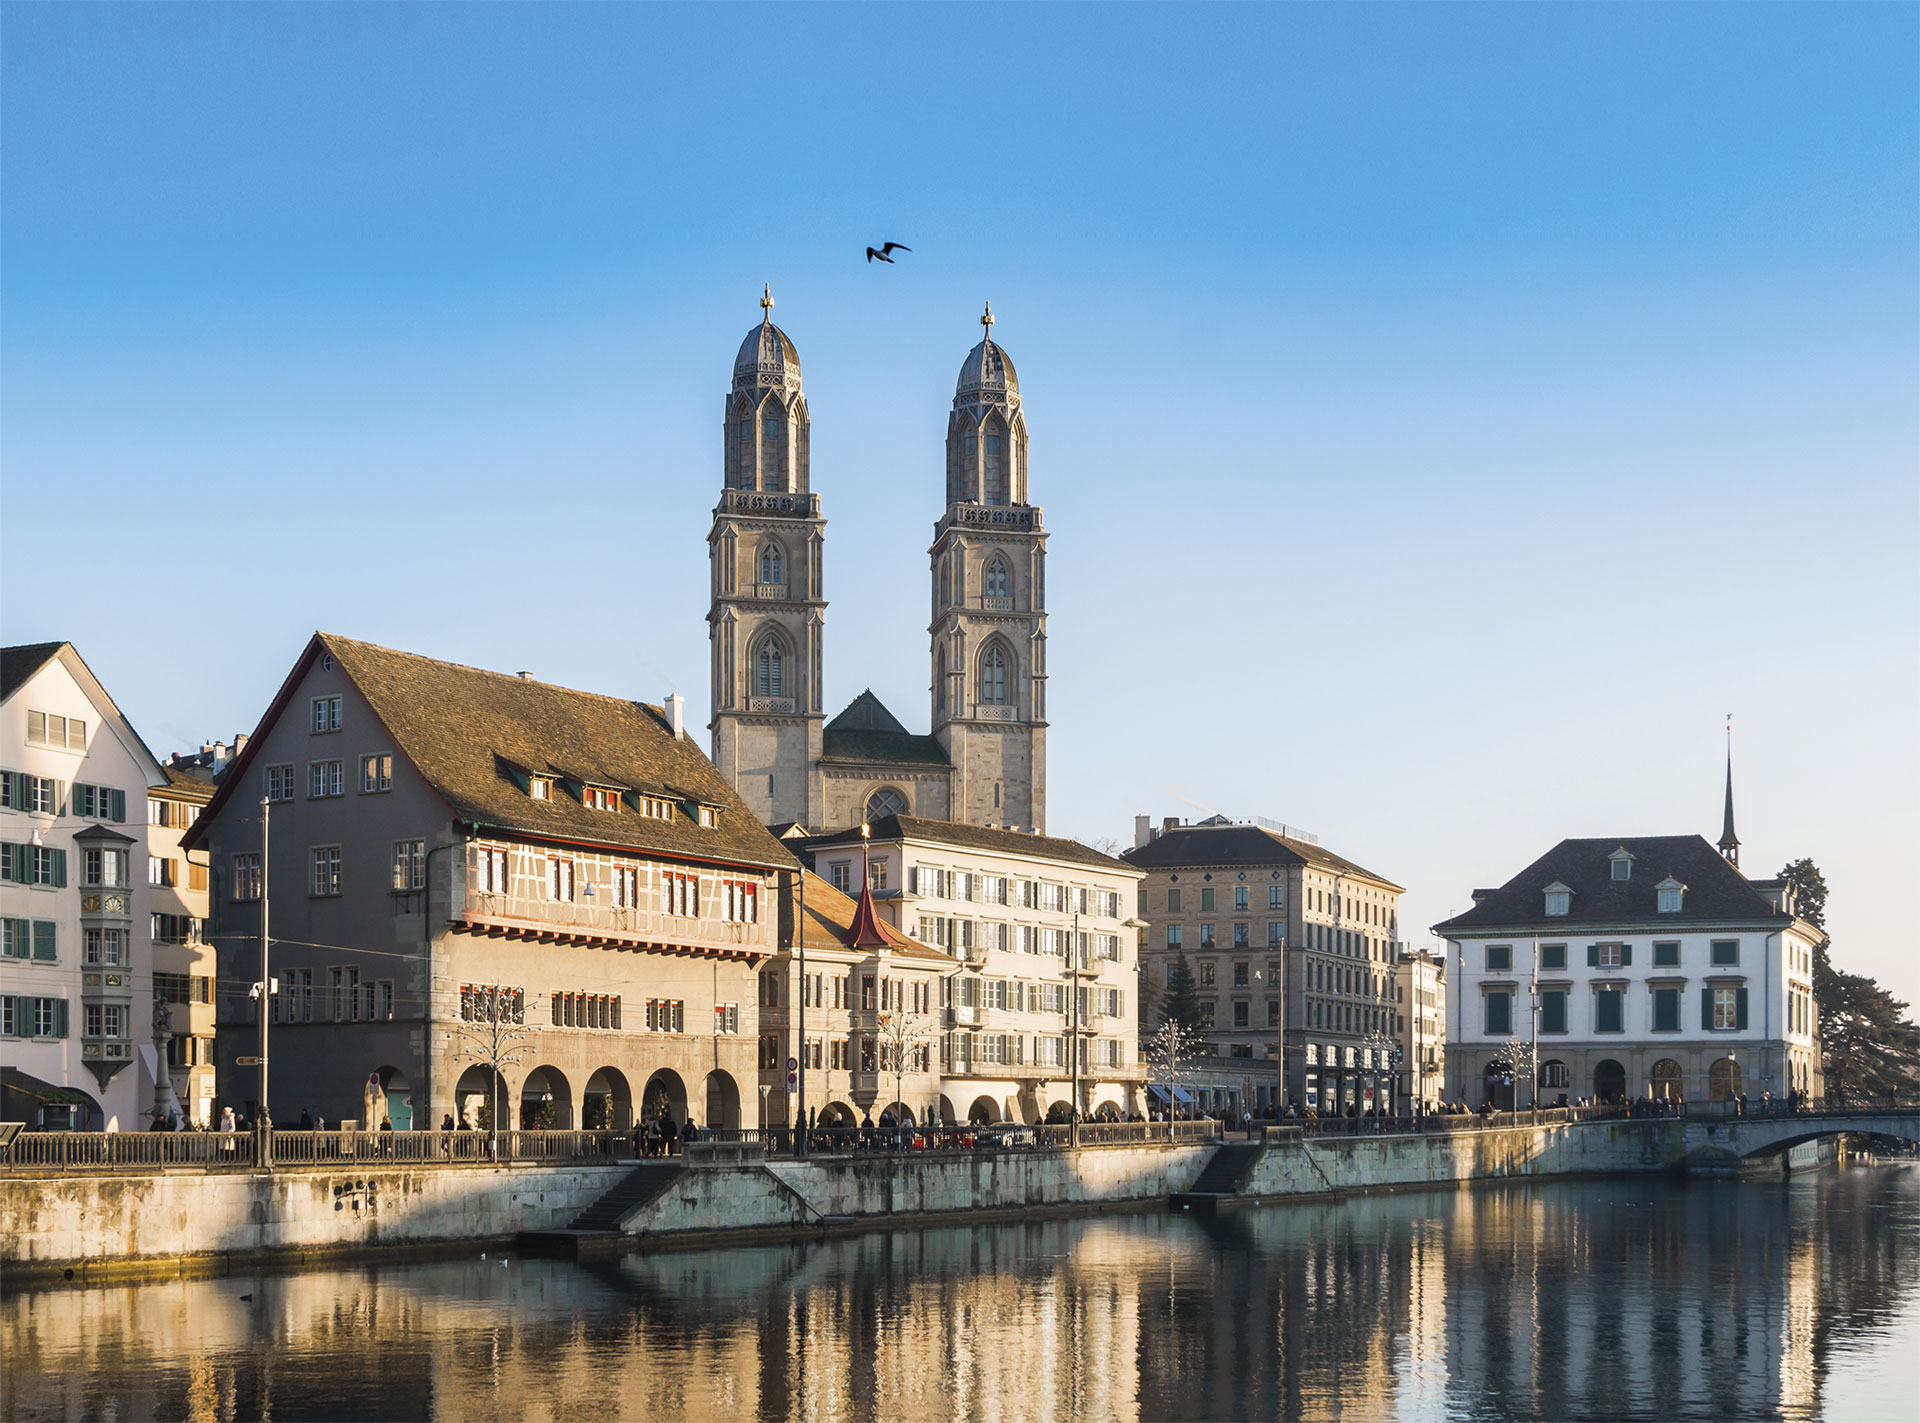 Großwärmepumpen-Kongress in Zürich - Deutlicher Trend zu